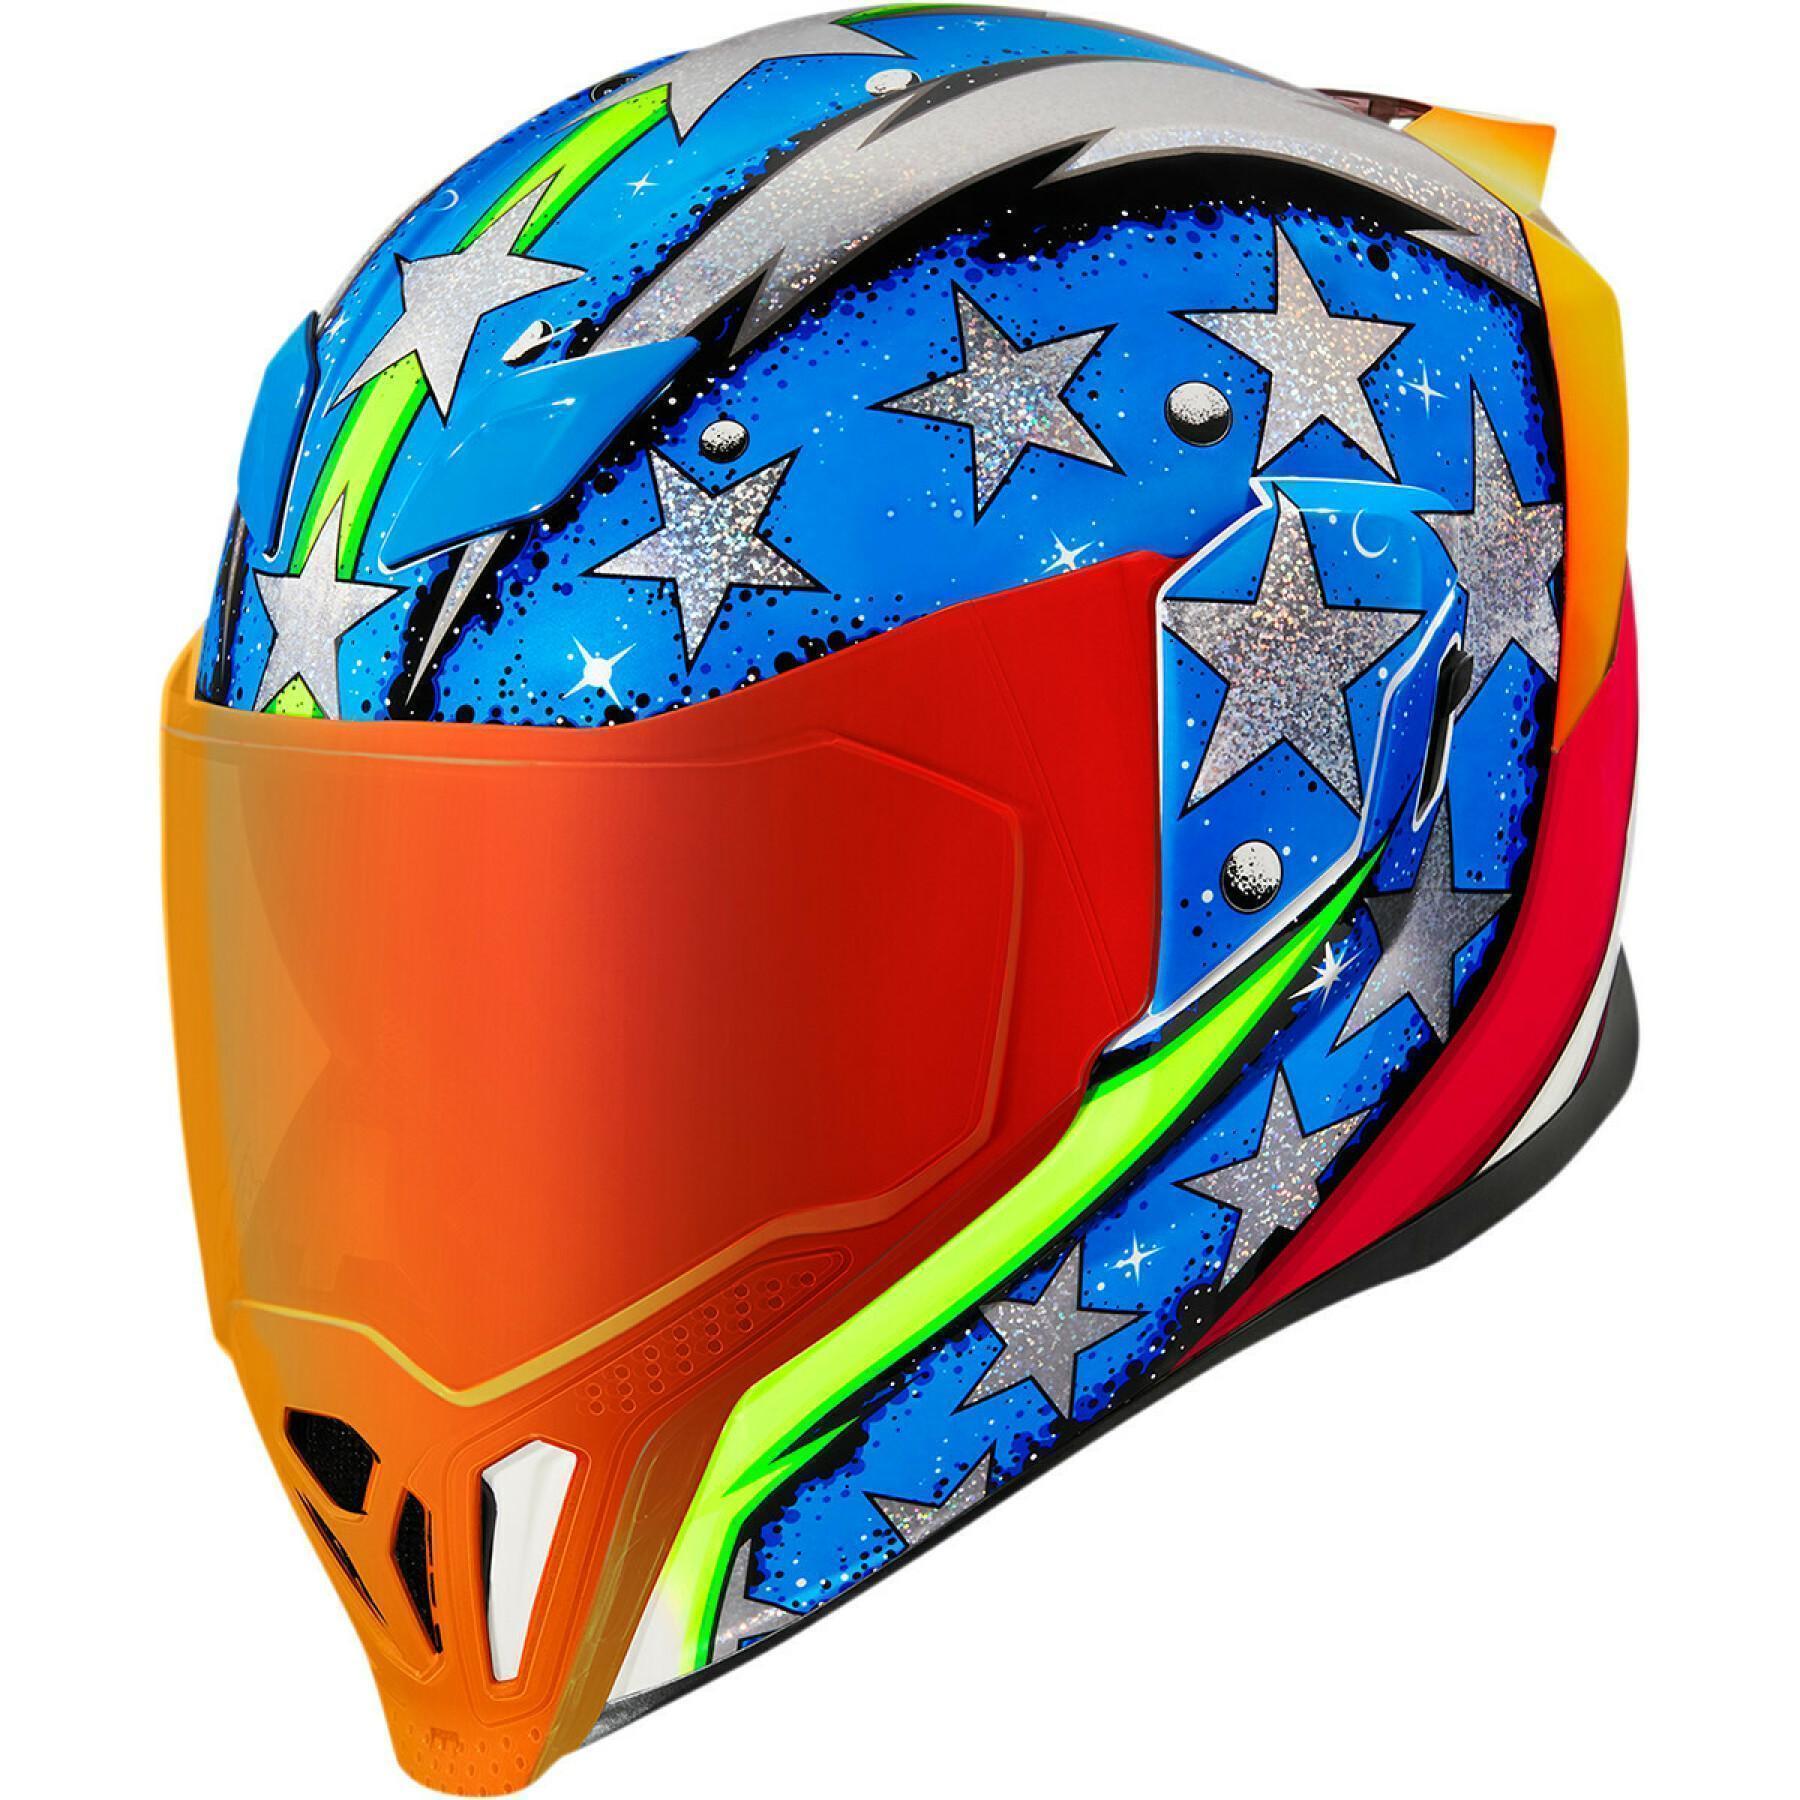 Full face motorcycle helmet Icon airflite™ spaceforce